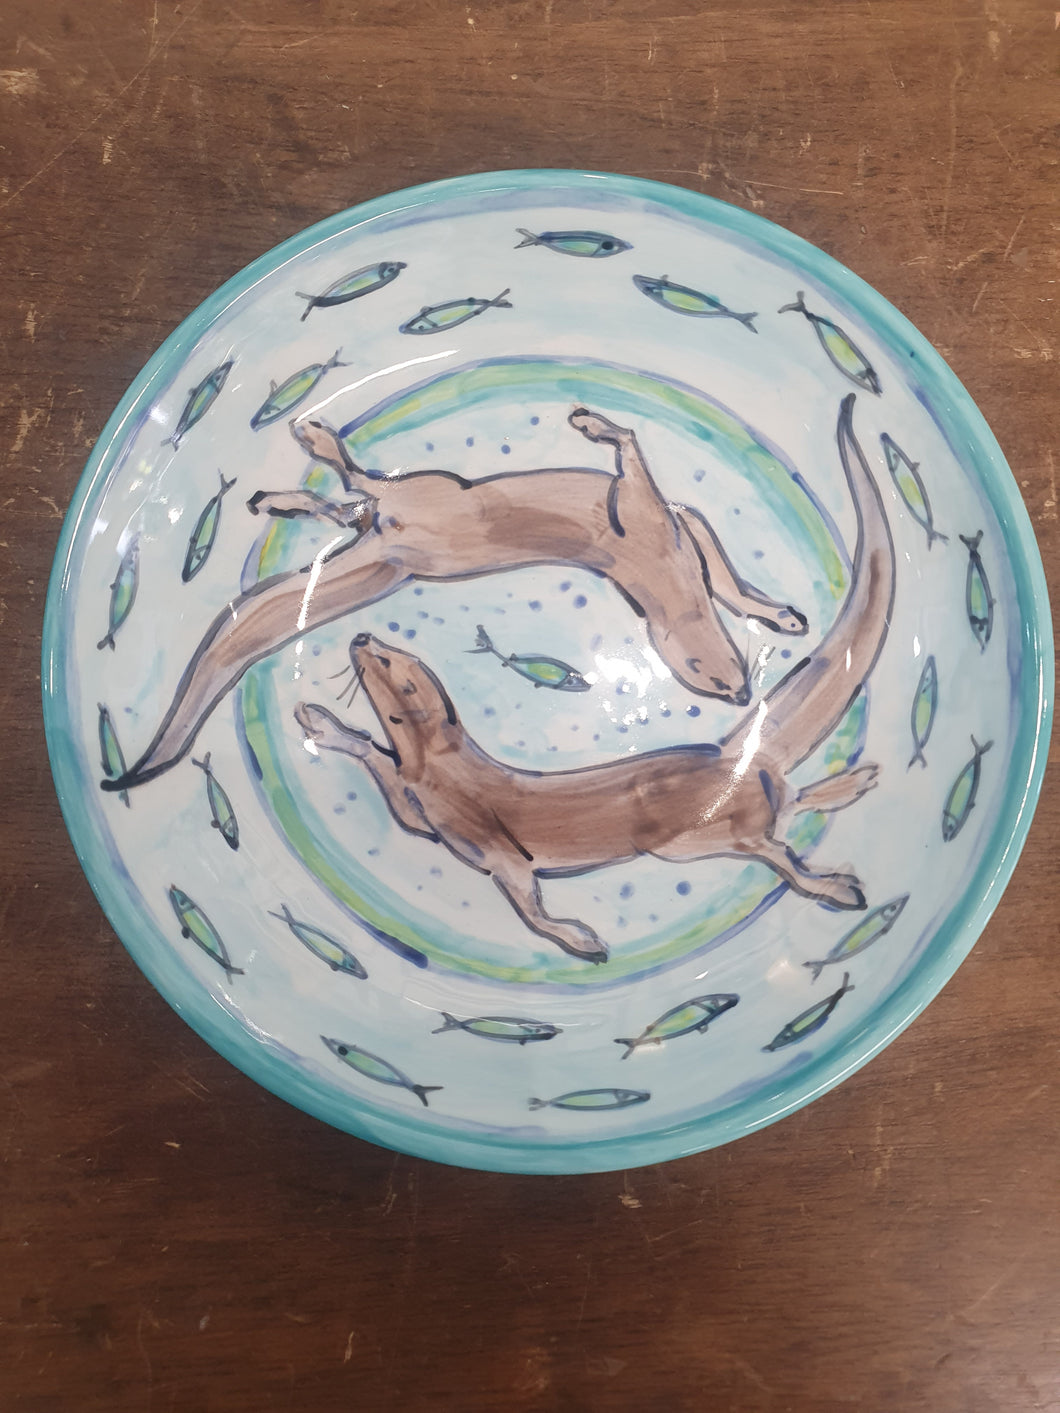 Otters Hand painted Bowl by Emma Macfadyen